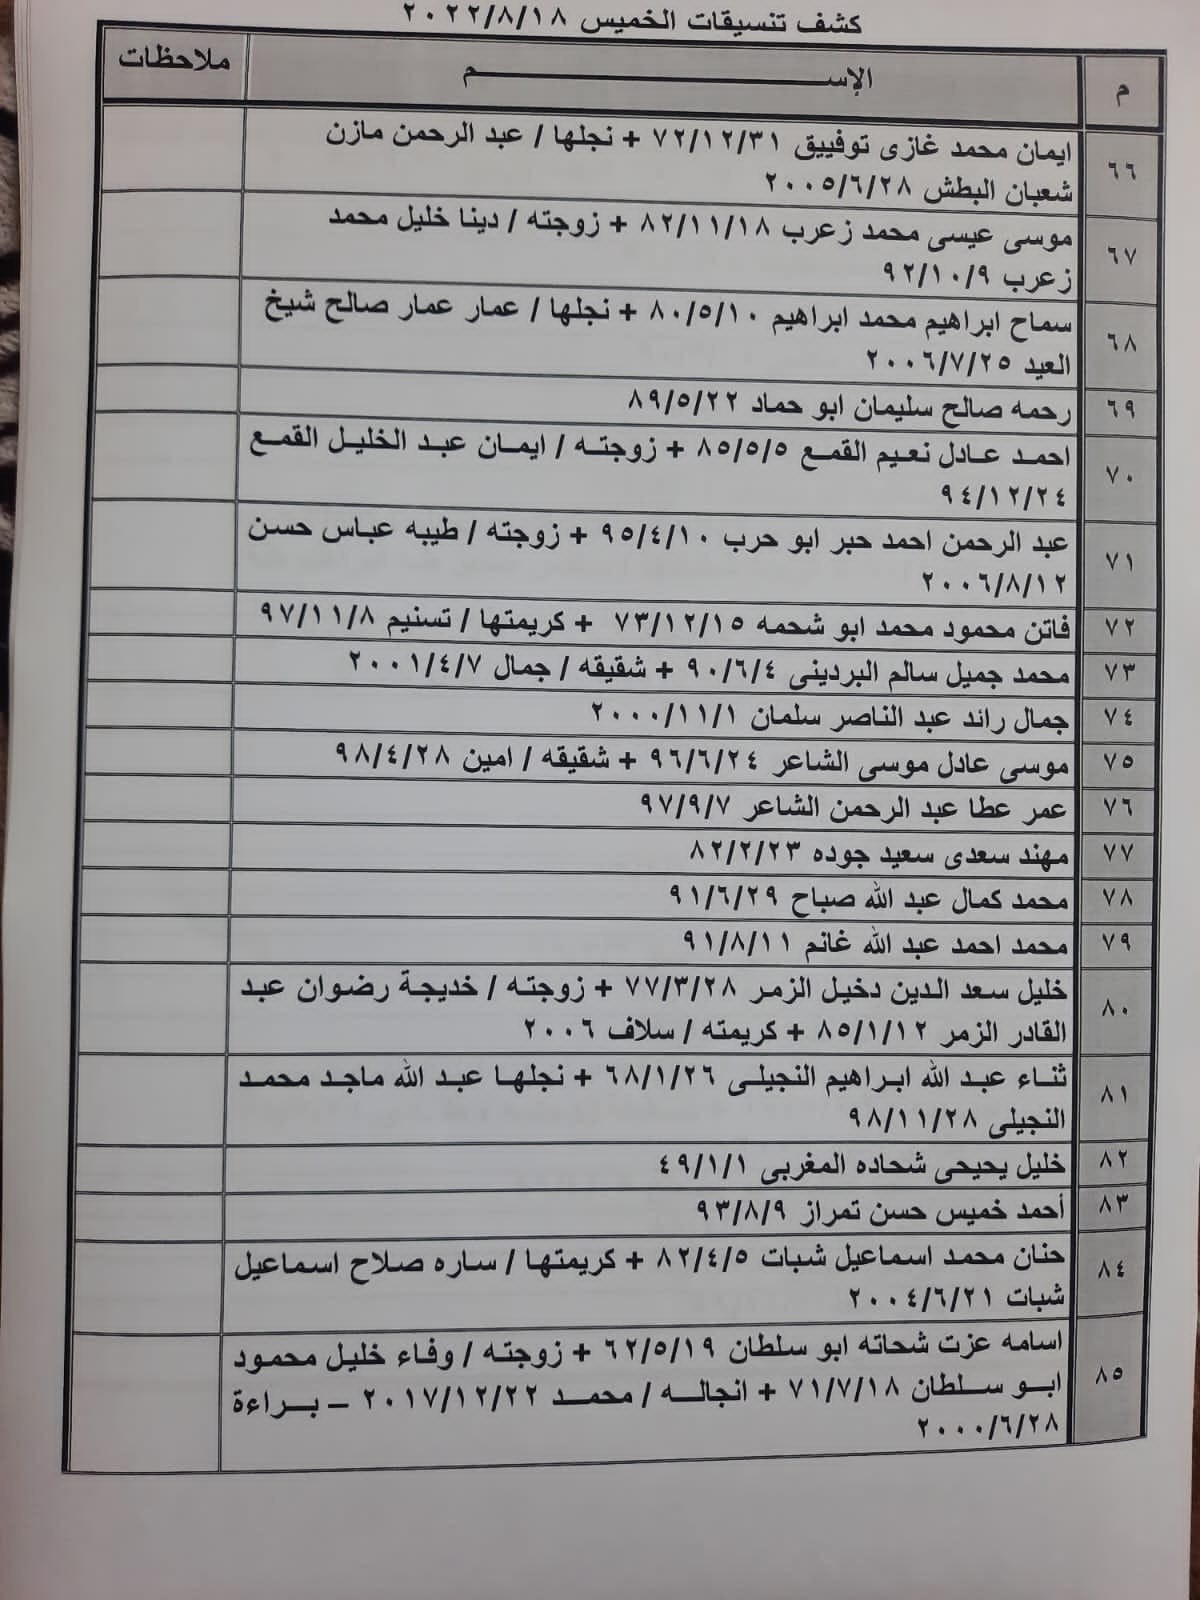 بالأسماء: كشف "تنسيقات مصرية" للسفر عبر معبر رفح الخميس 18 أغسطس 2022